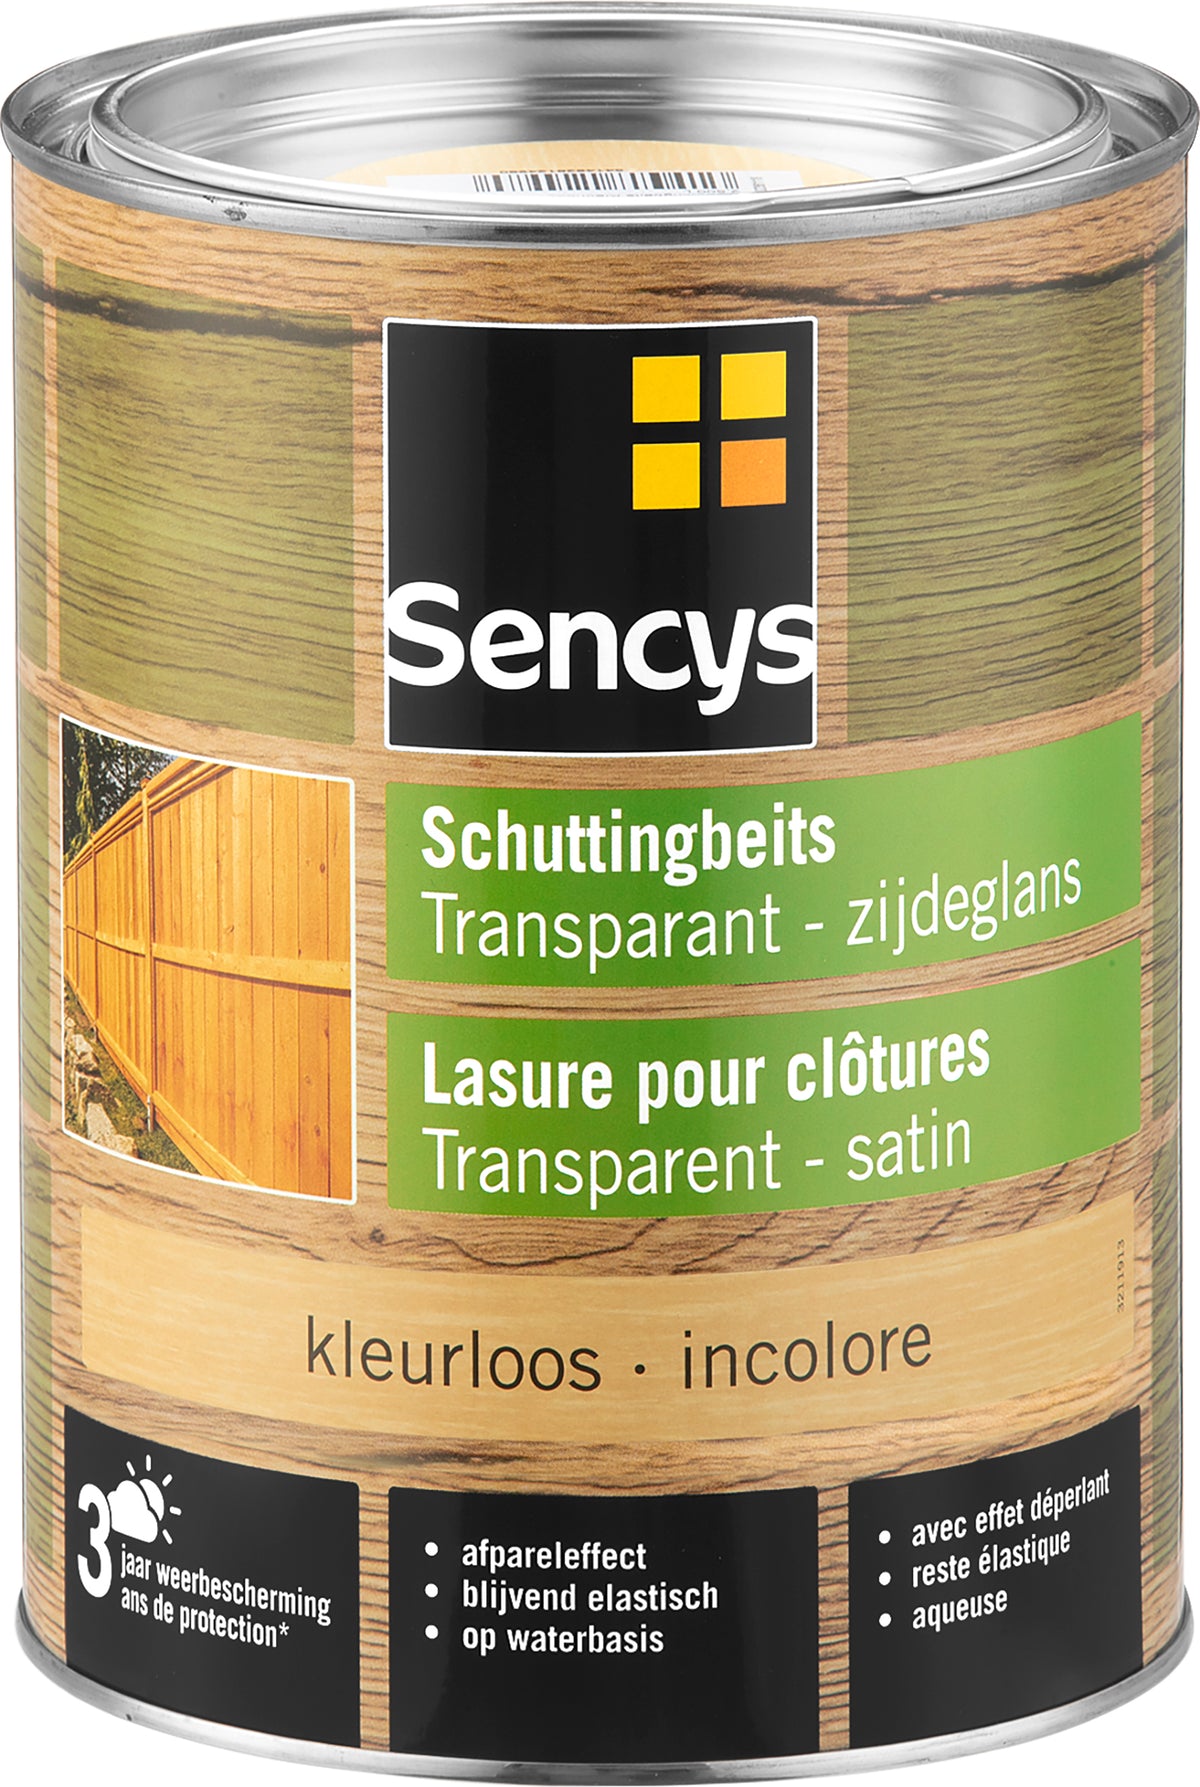 Sencys schuttingbeits transparant kleurloos 2,5L